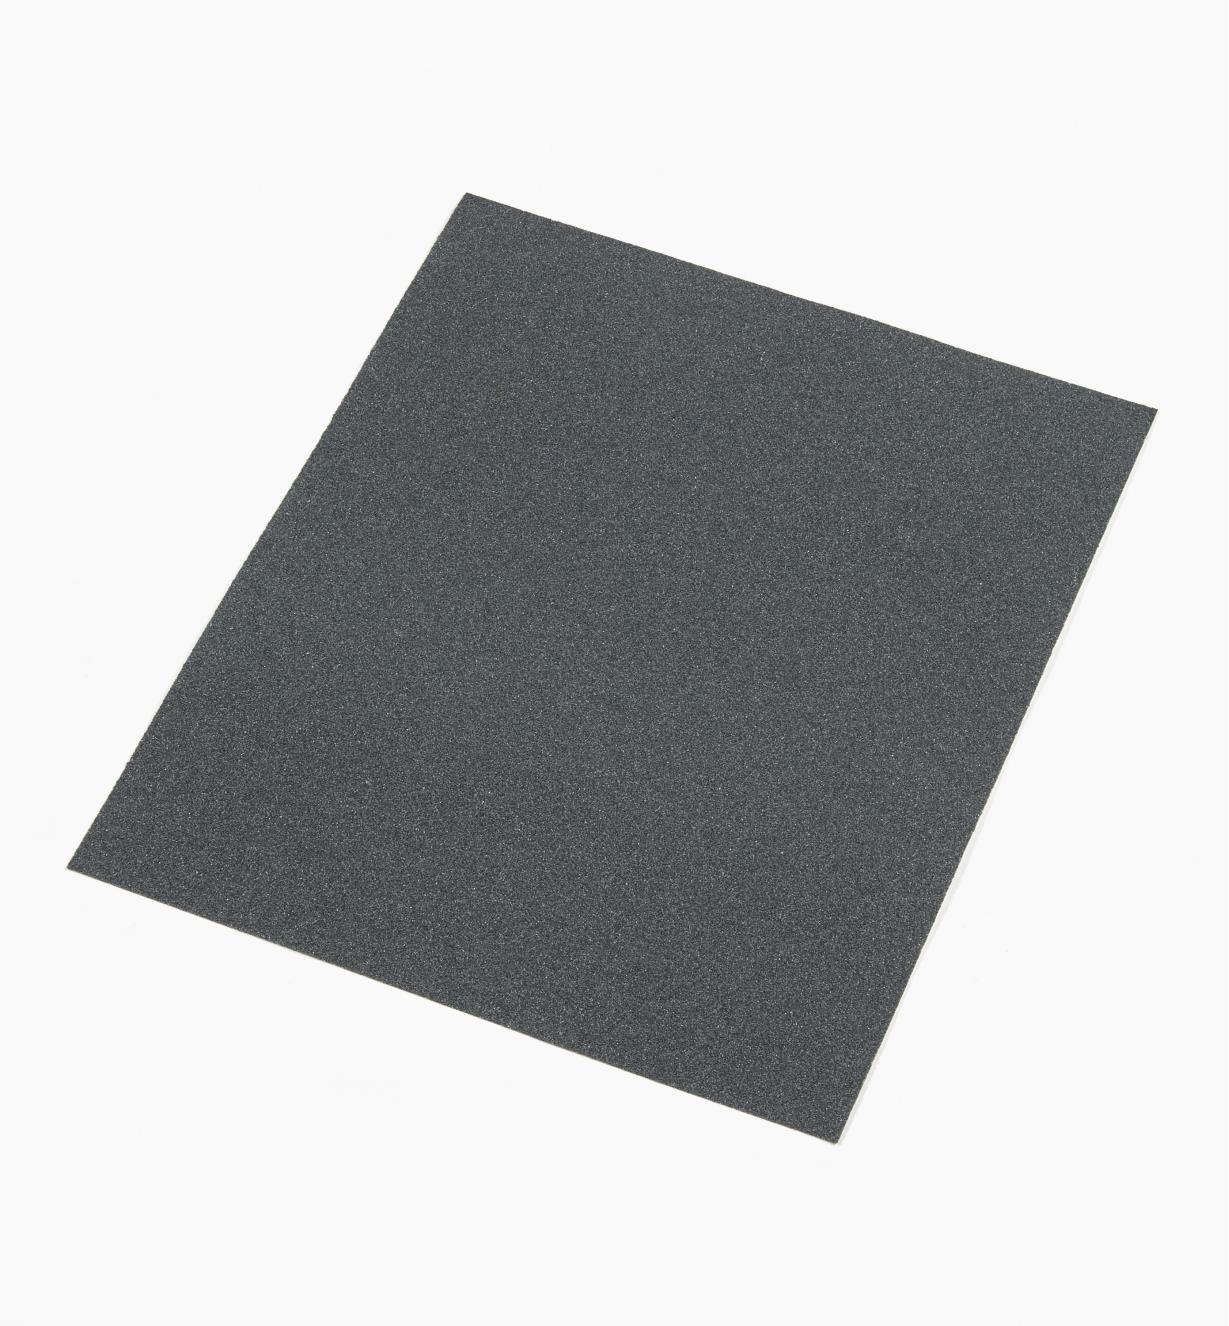 08K0171 - Papier abrasif pour ponçage à sec ou humide Mirka, grain 80, l'unité